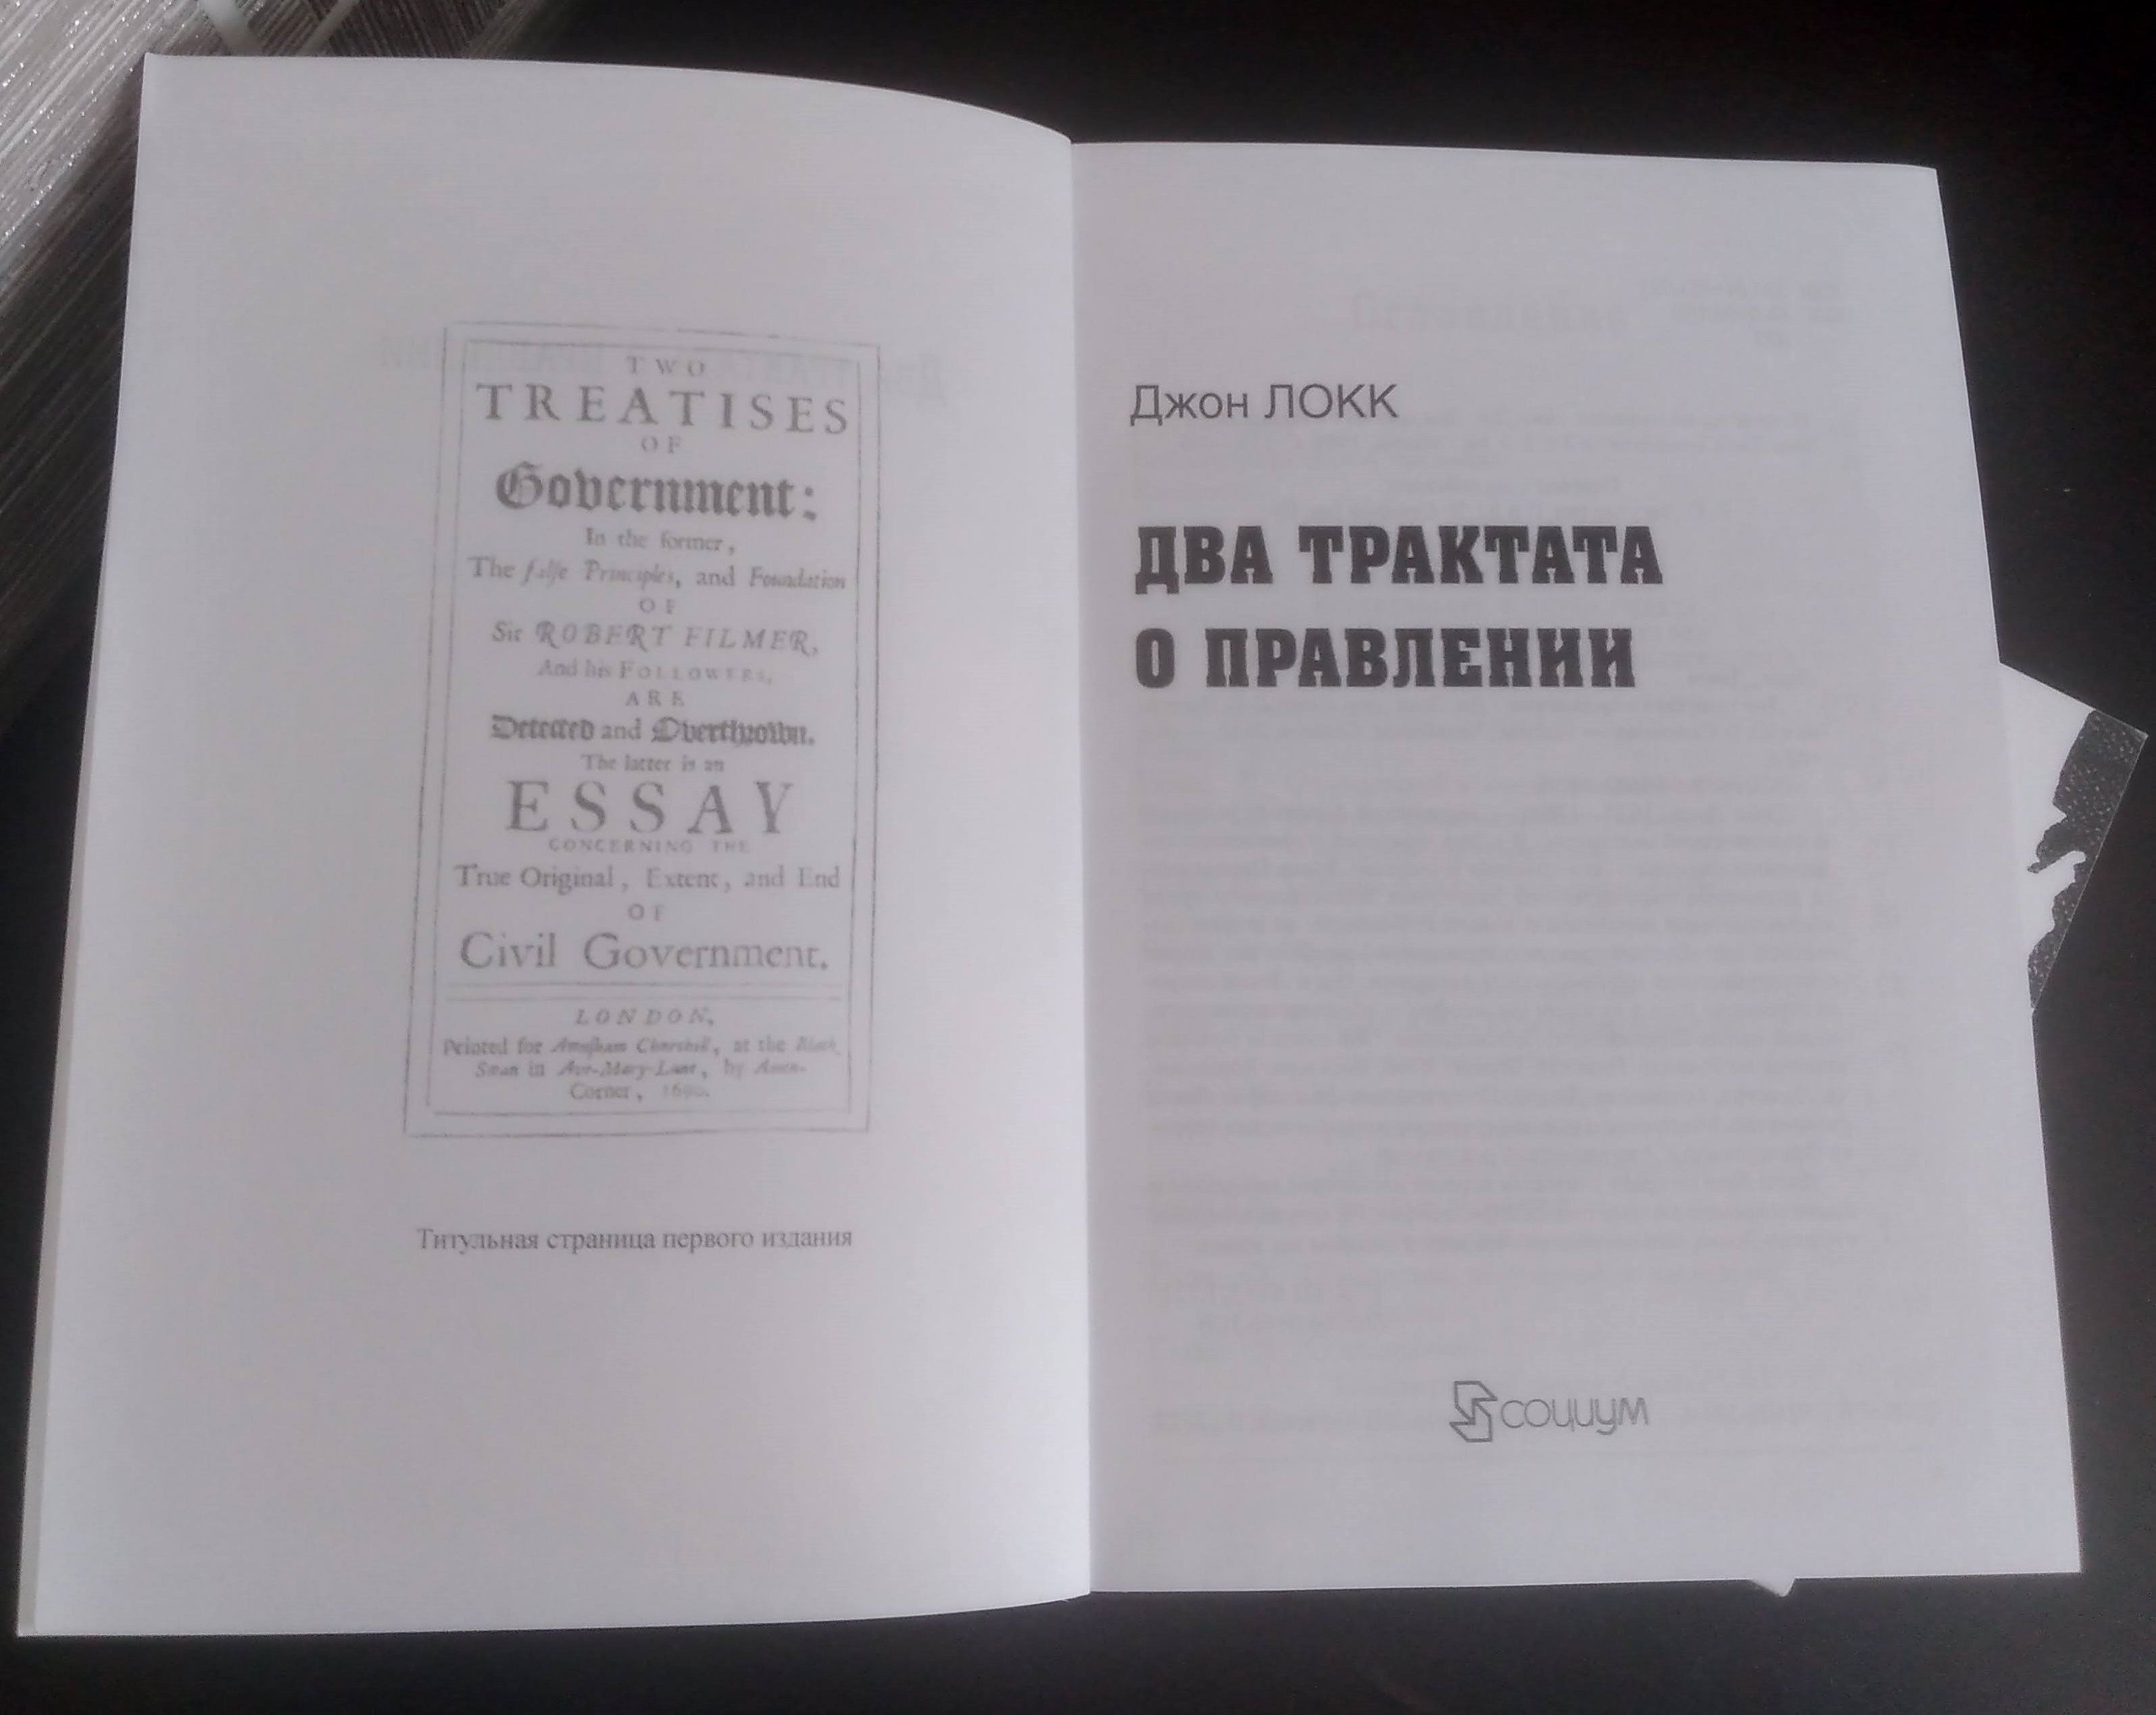  Джон Локк "Два трактата о правлении"